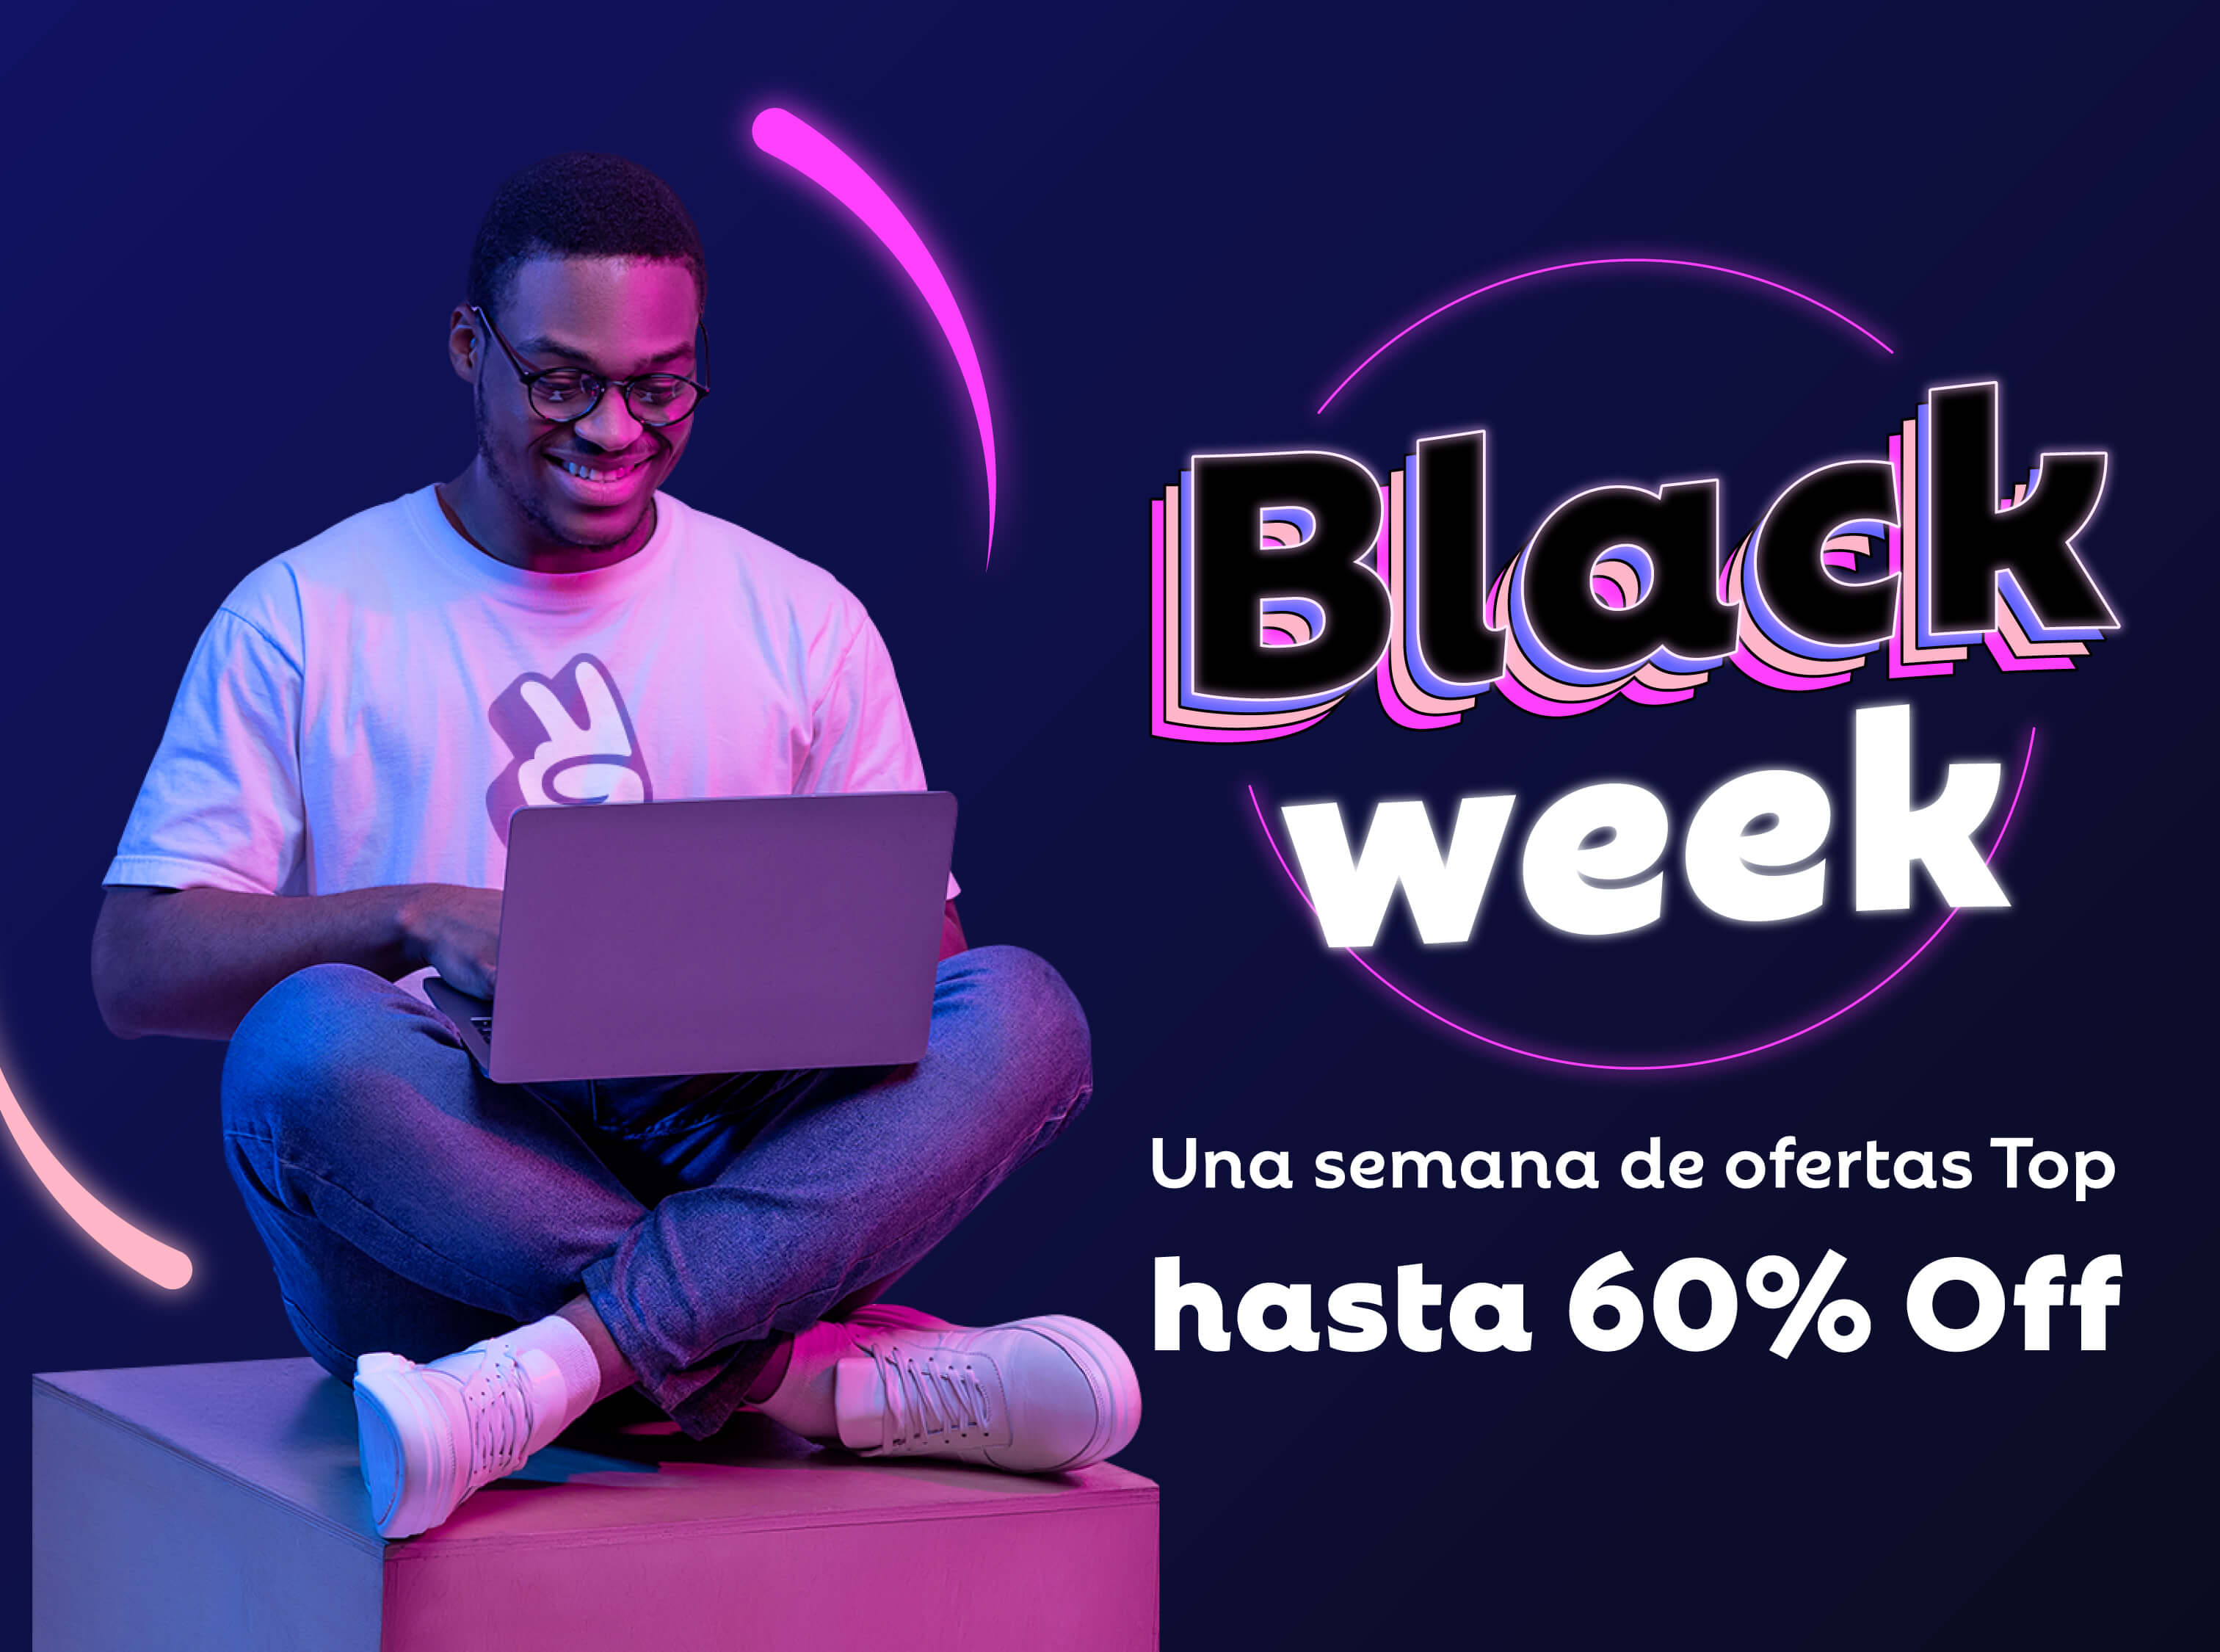 black-week